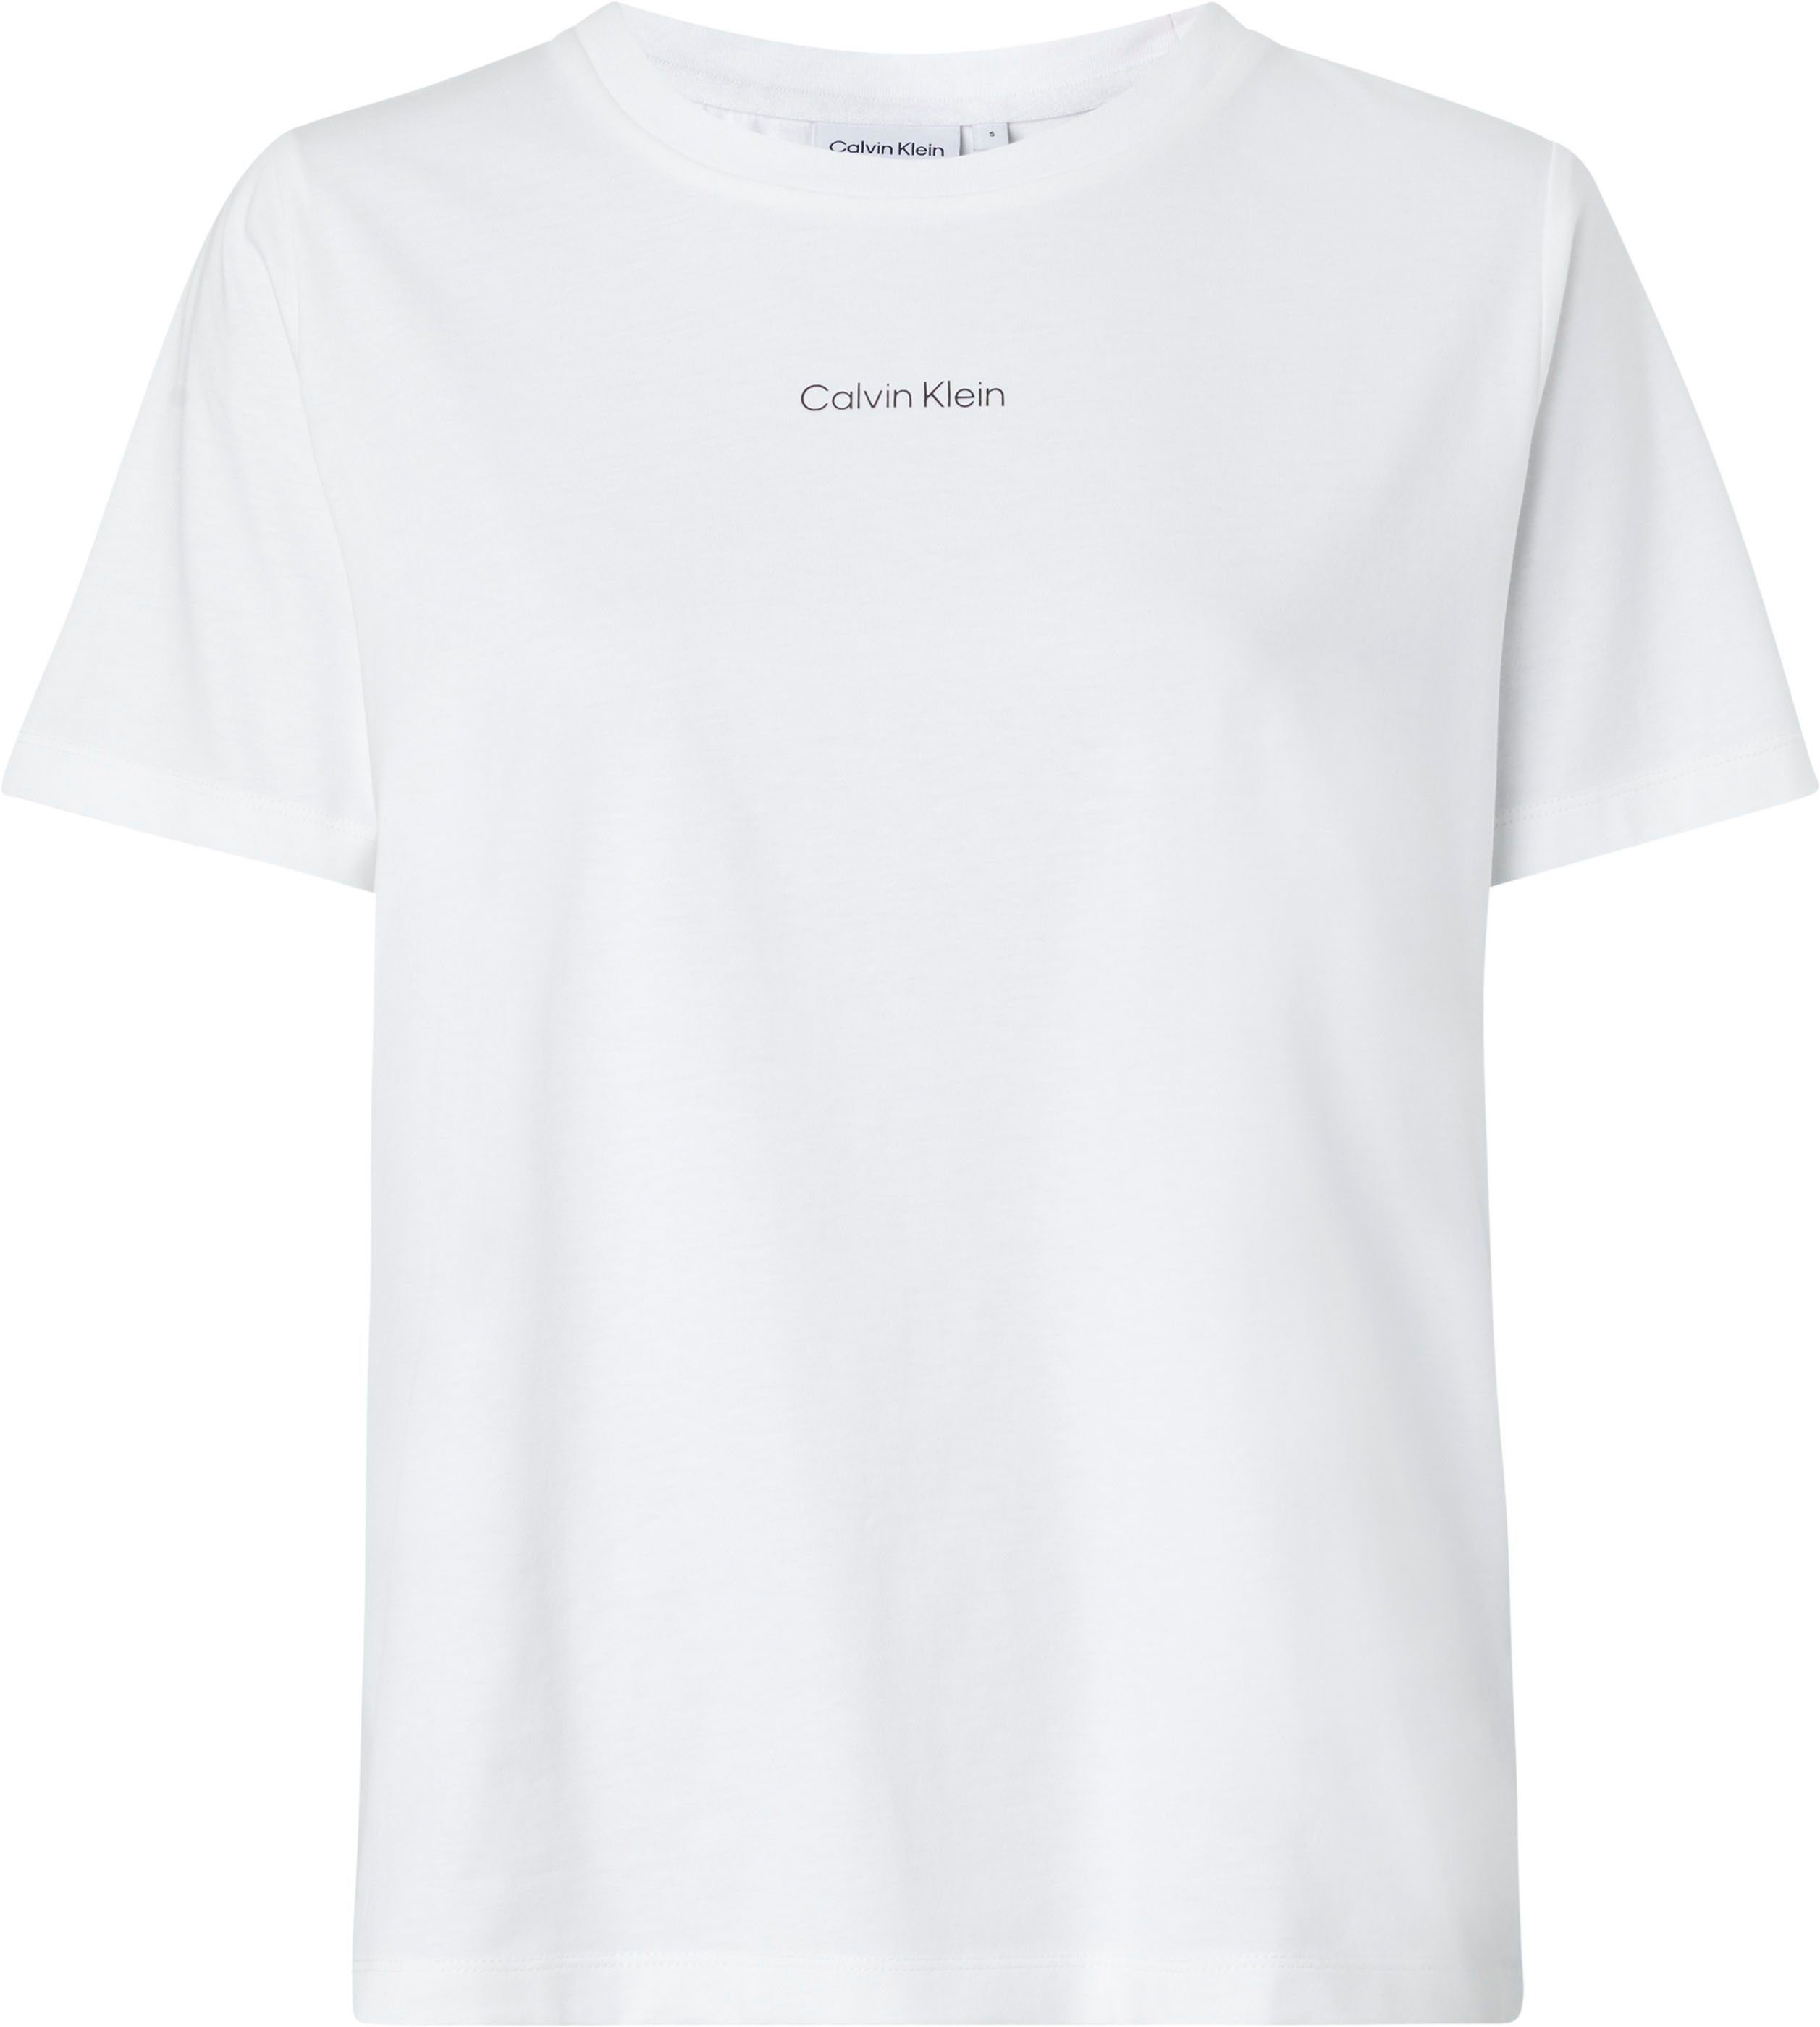 T-SHIRT Klein auf T-Shirt MICRO INCLU Curve Markenlabel Brust mit Calvin LOGO der